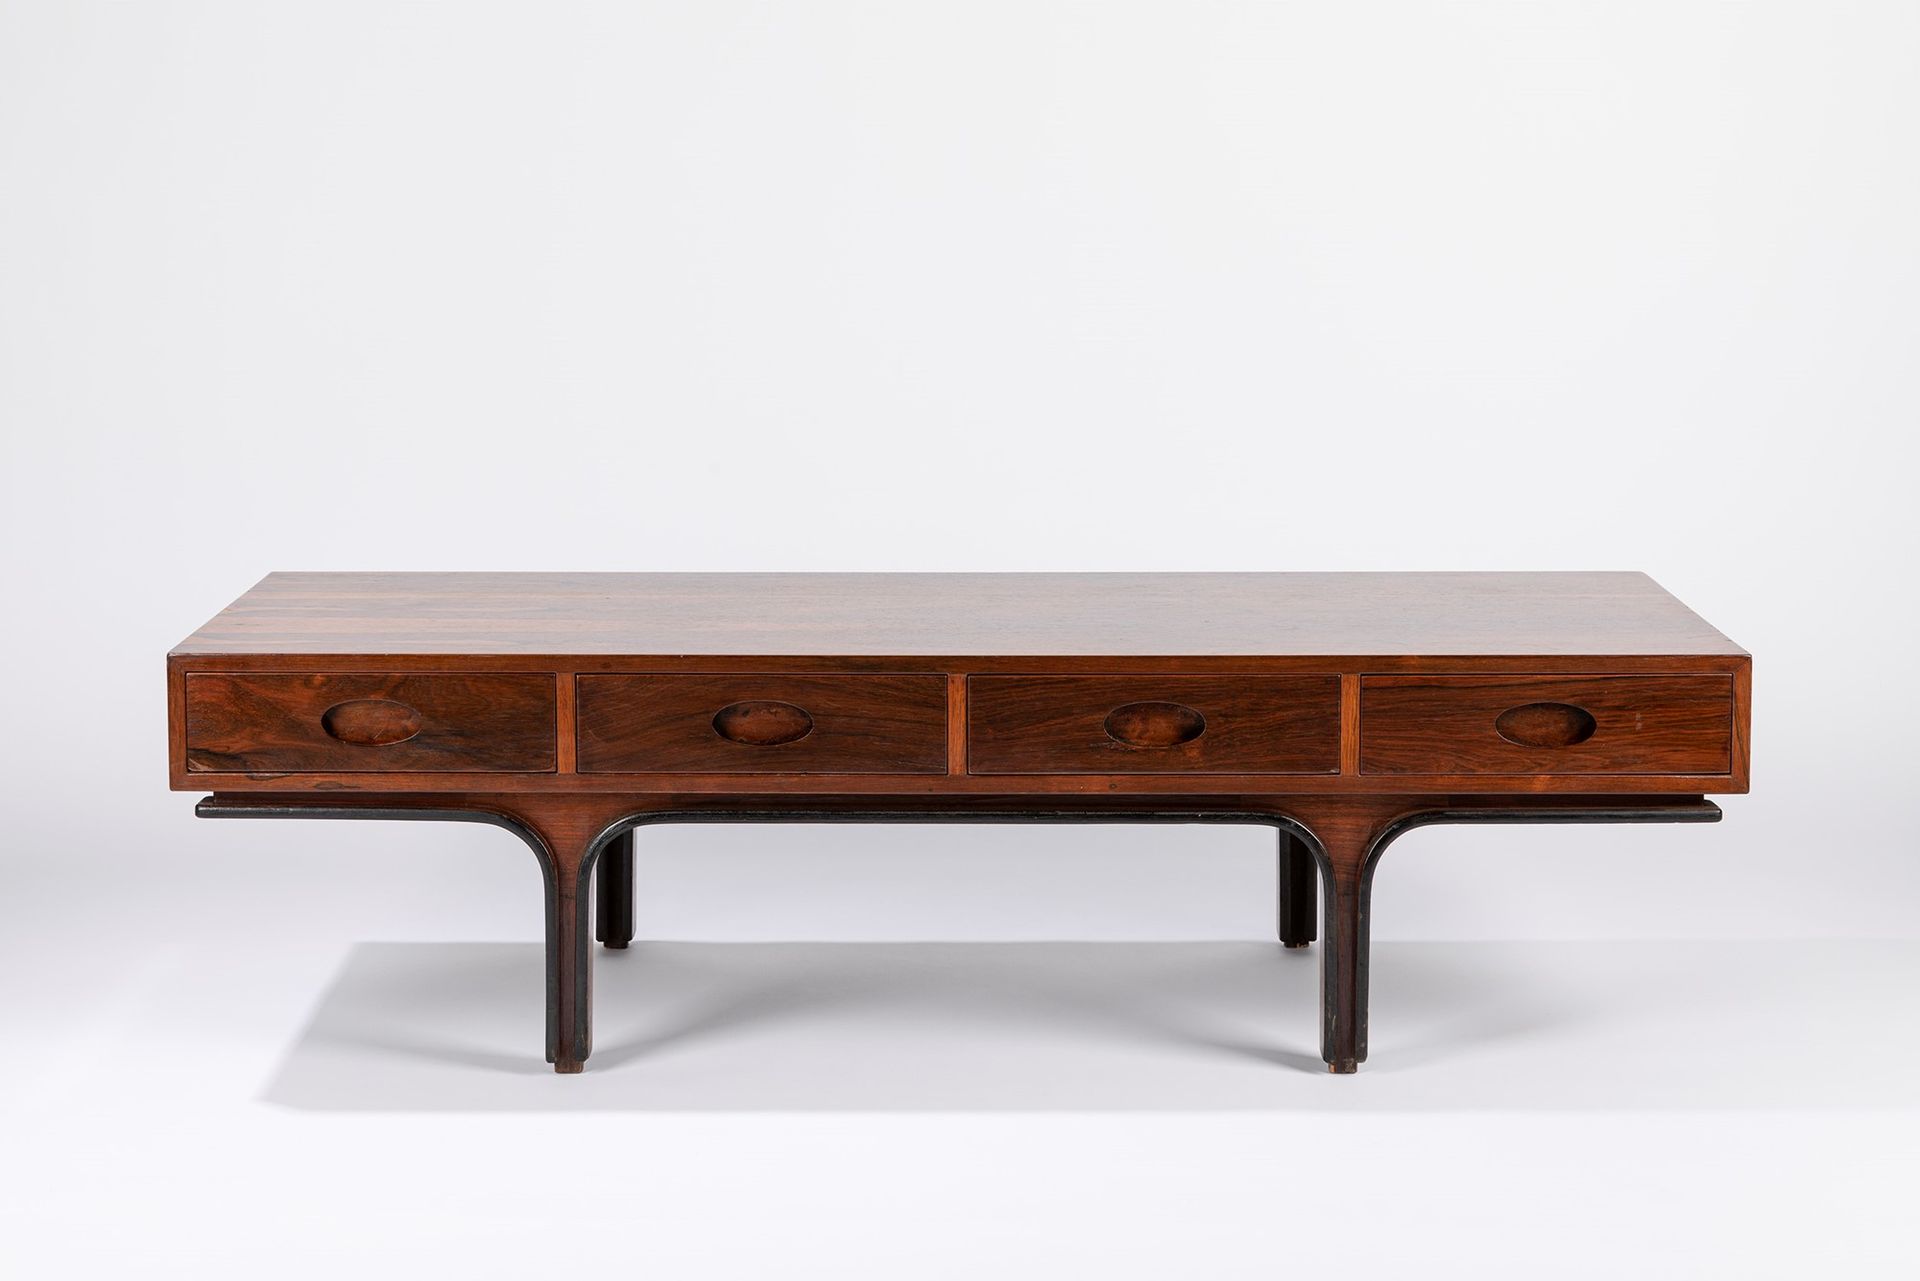 GIANFRANCO FRATTINI Table basse, 1960 env.

H 39 x 140 x 53 cm
bois et quatre ti&hellip;